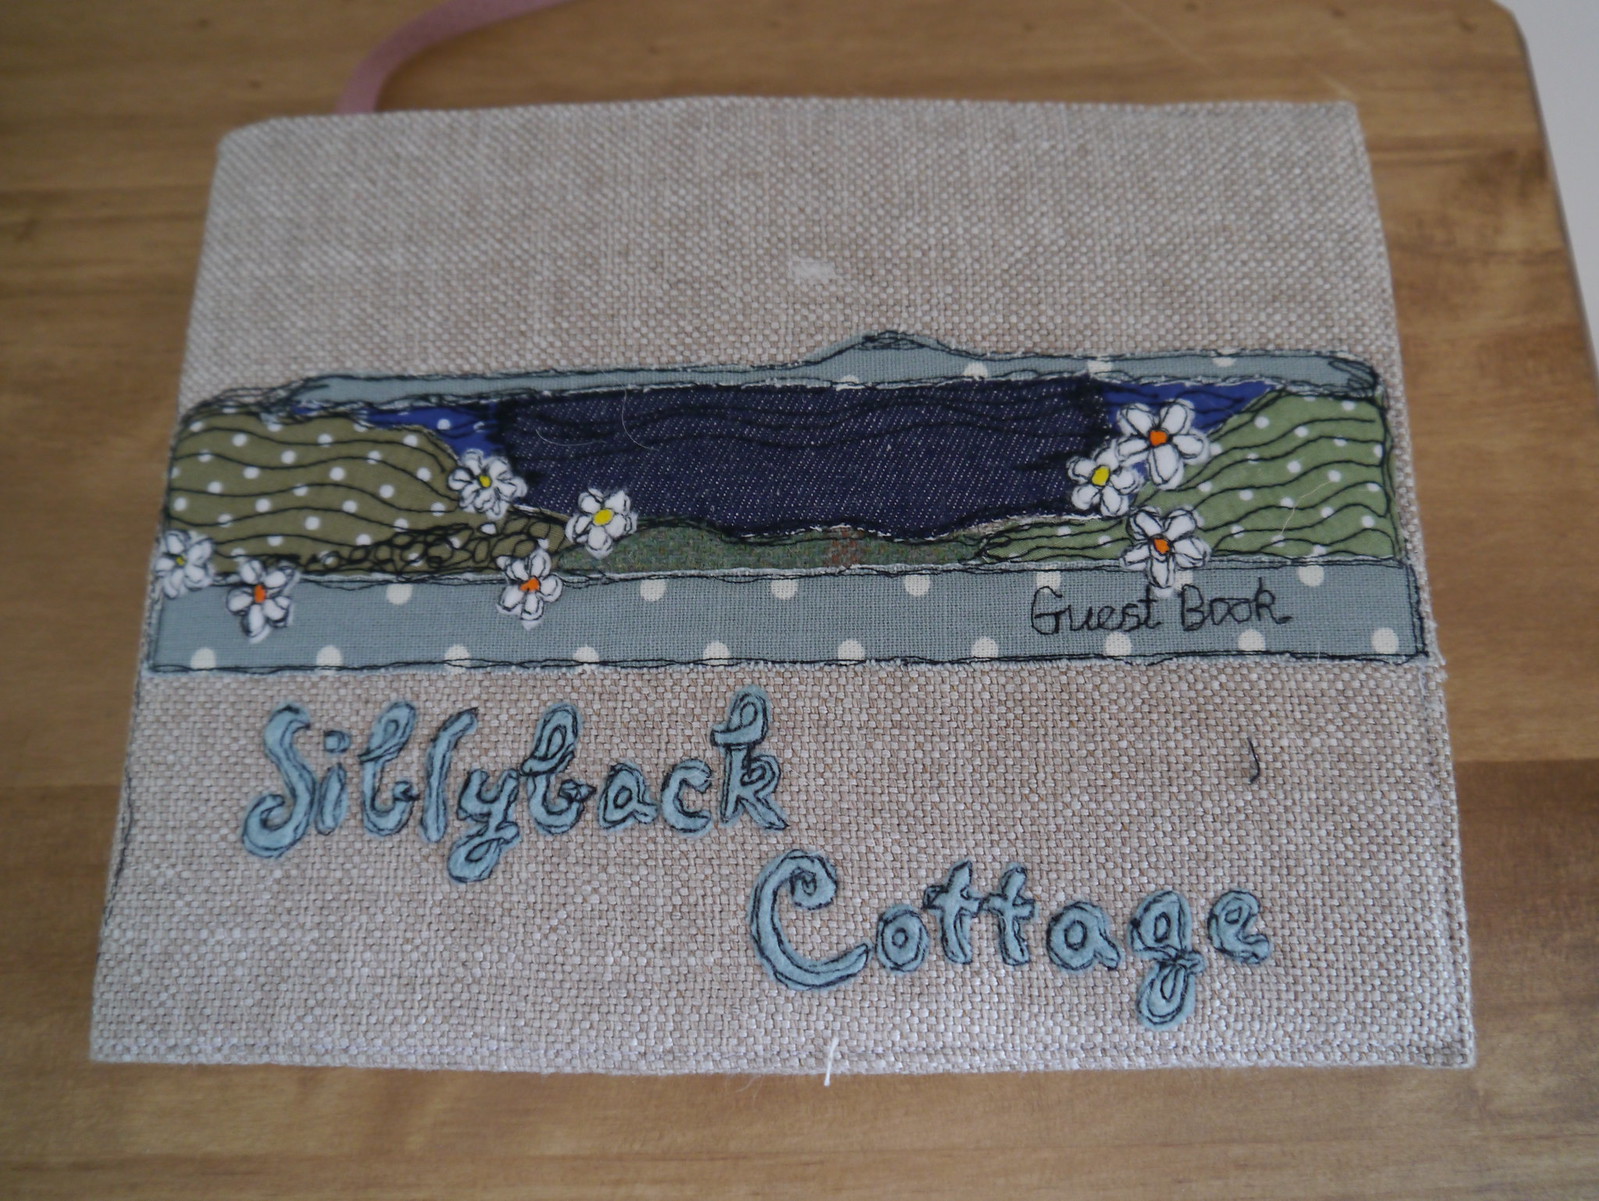 Siblyback Cottage - sleeps 4